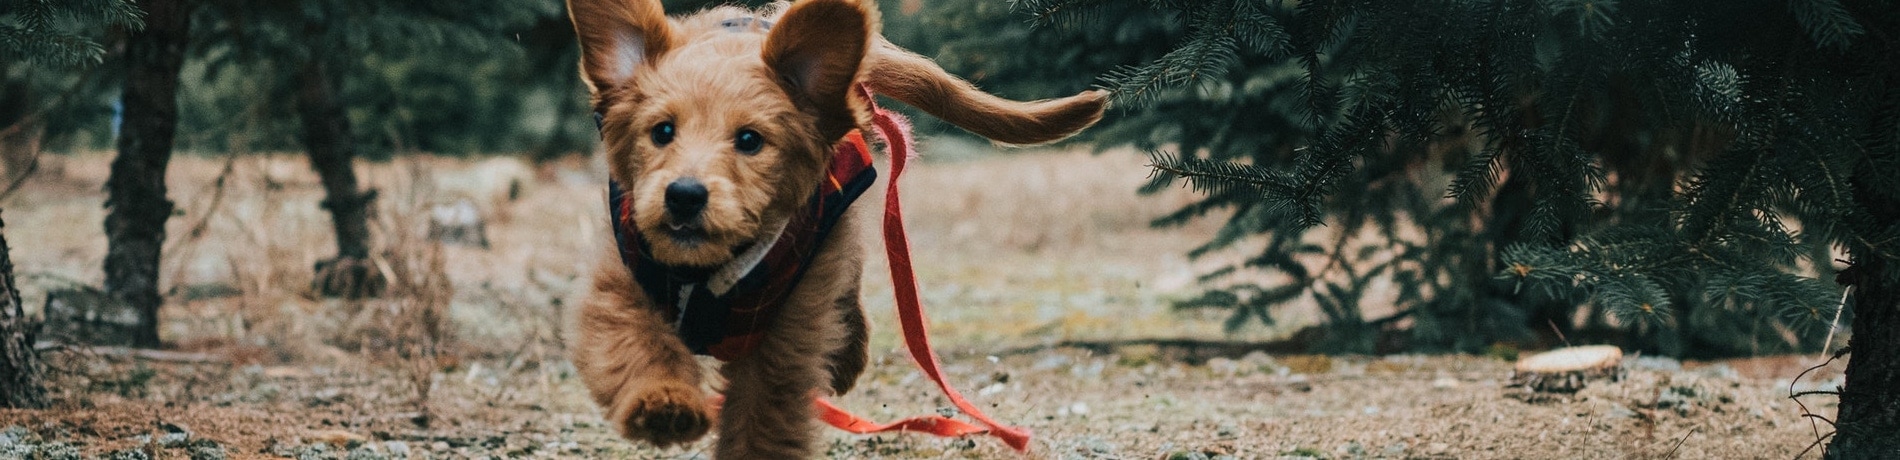 Is een kerstboom giftig voor honden?